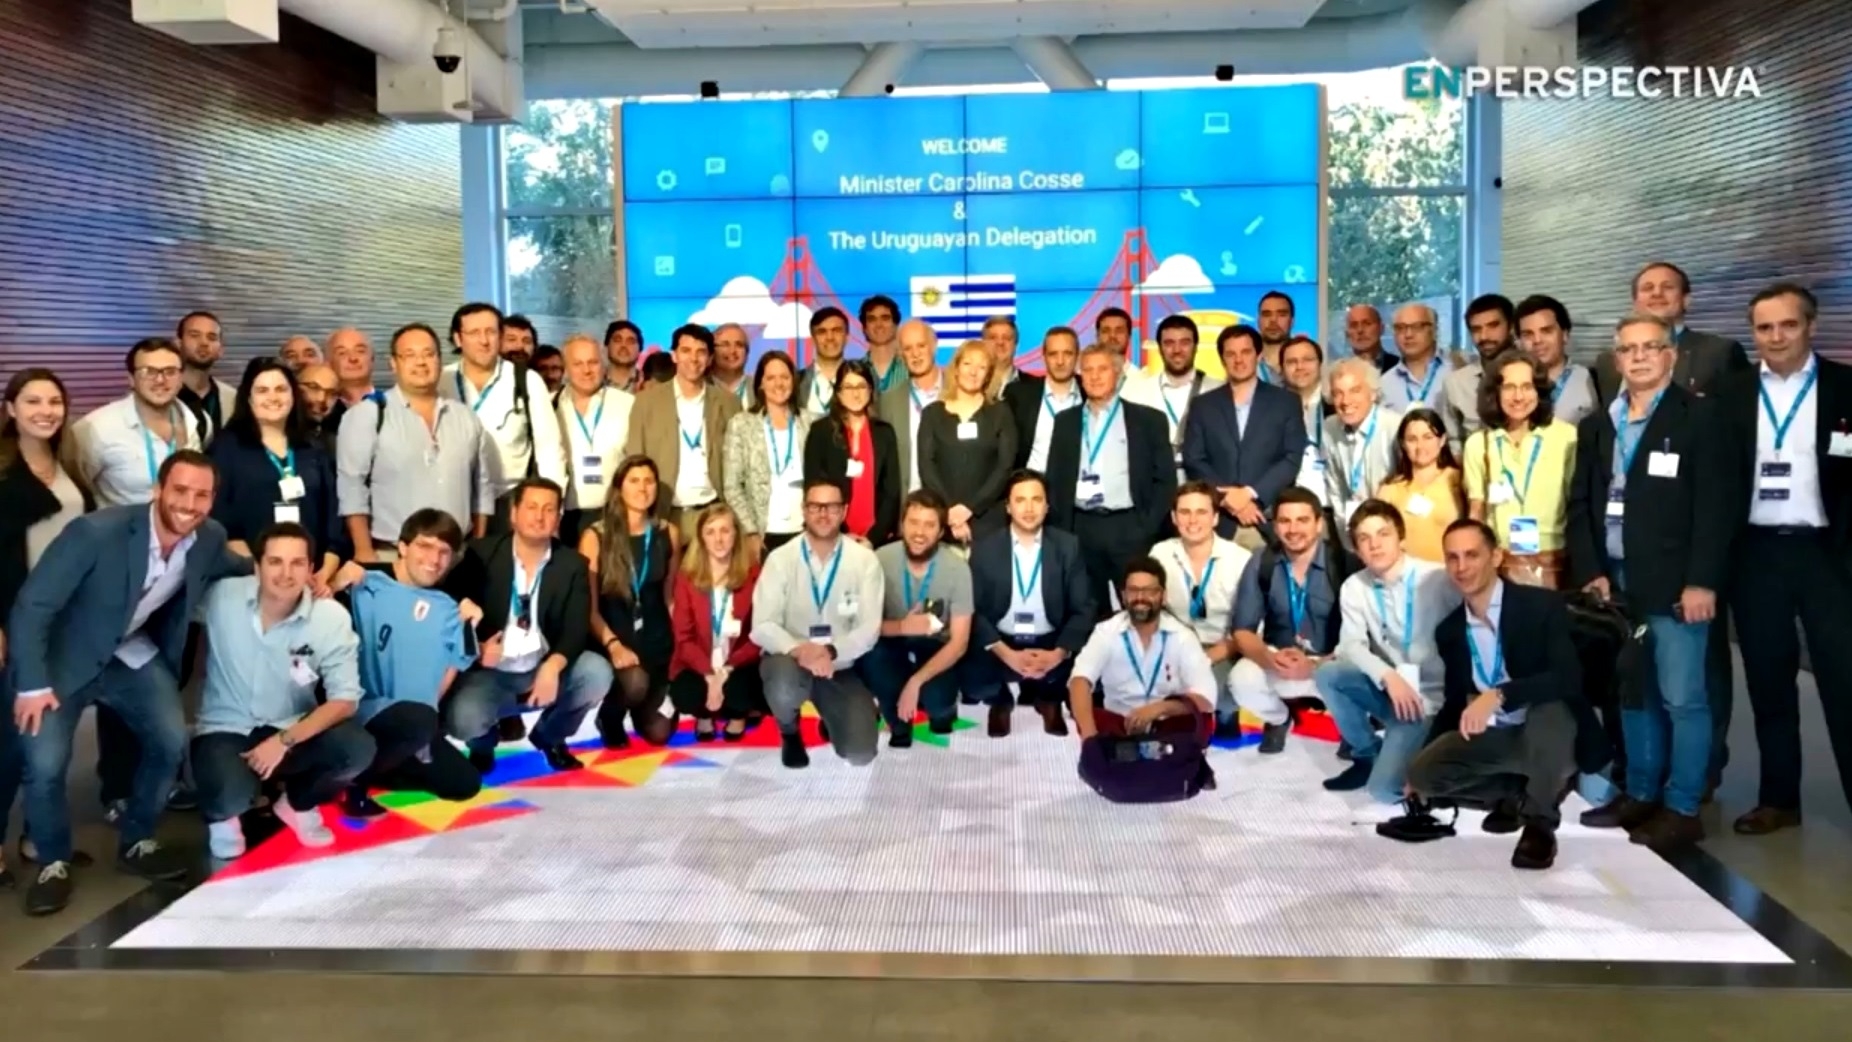  Misión uruguaya regresa de Silicon Valley con nuevos contactos y acuerdos